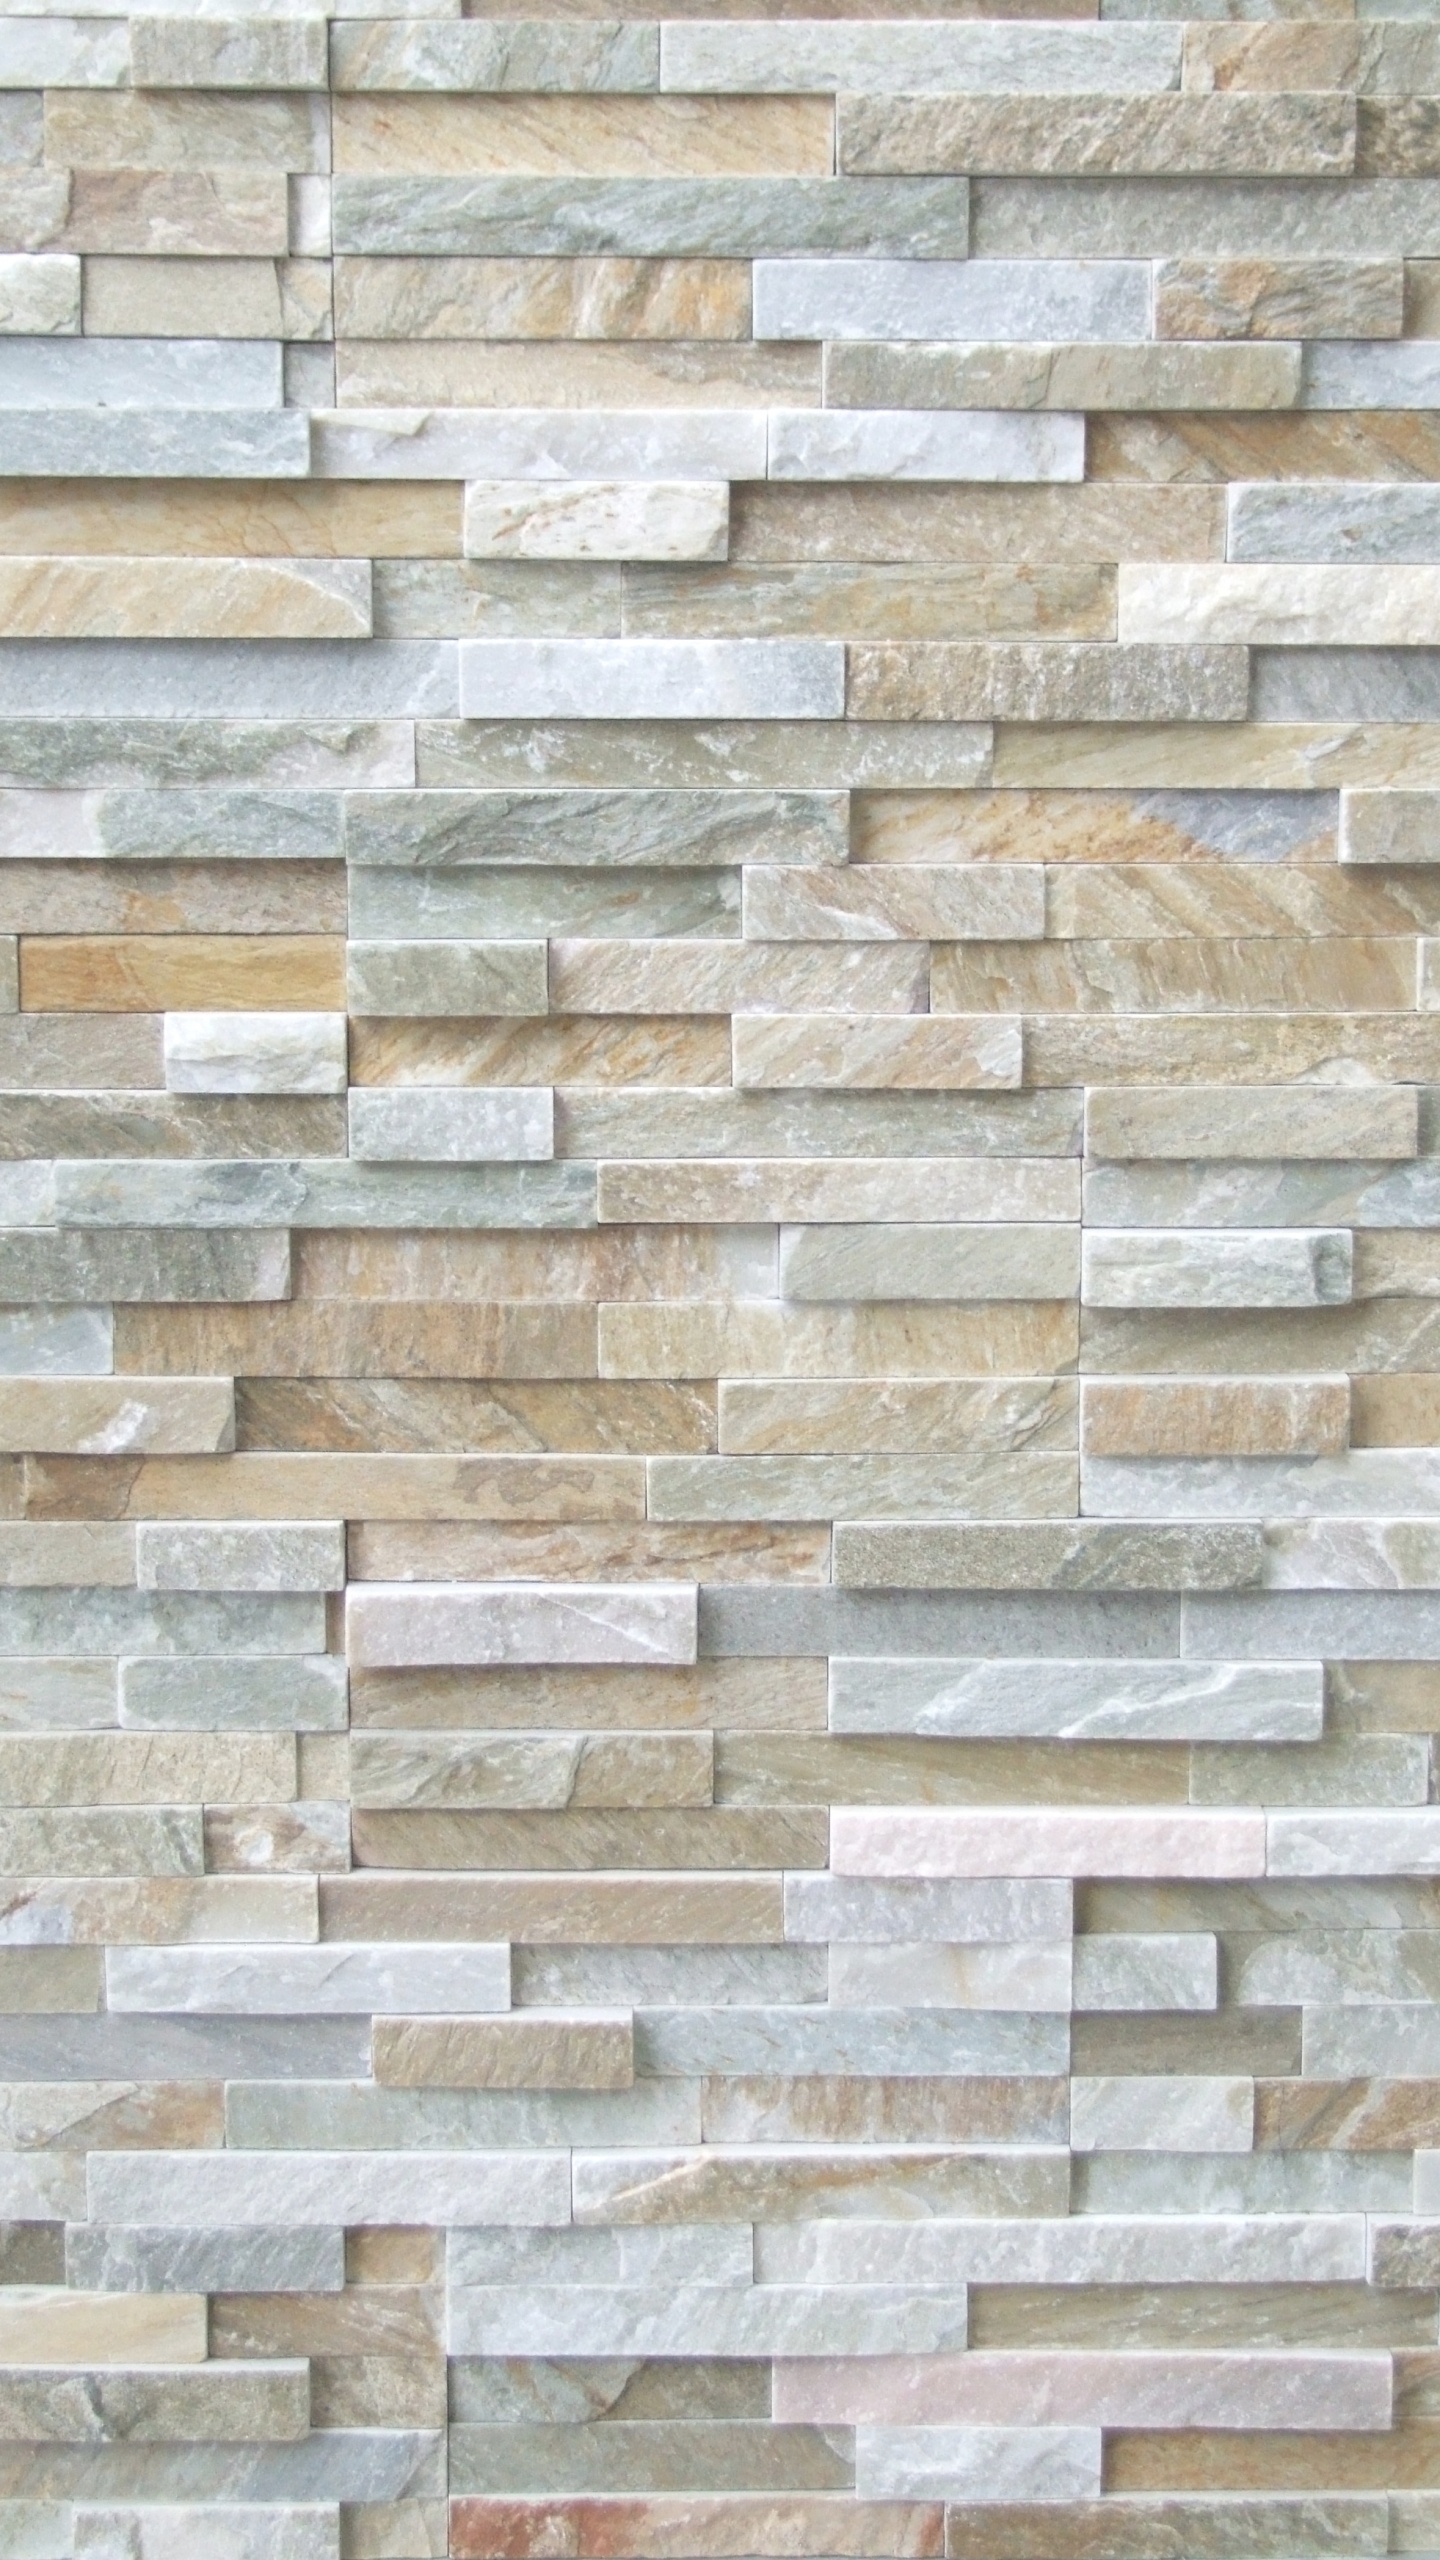 石饰面, 瓷砖, 石壁, 石板, 砌砖 壁纸 1440x2560 允许